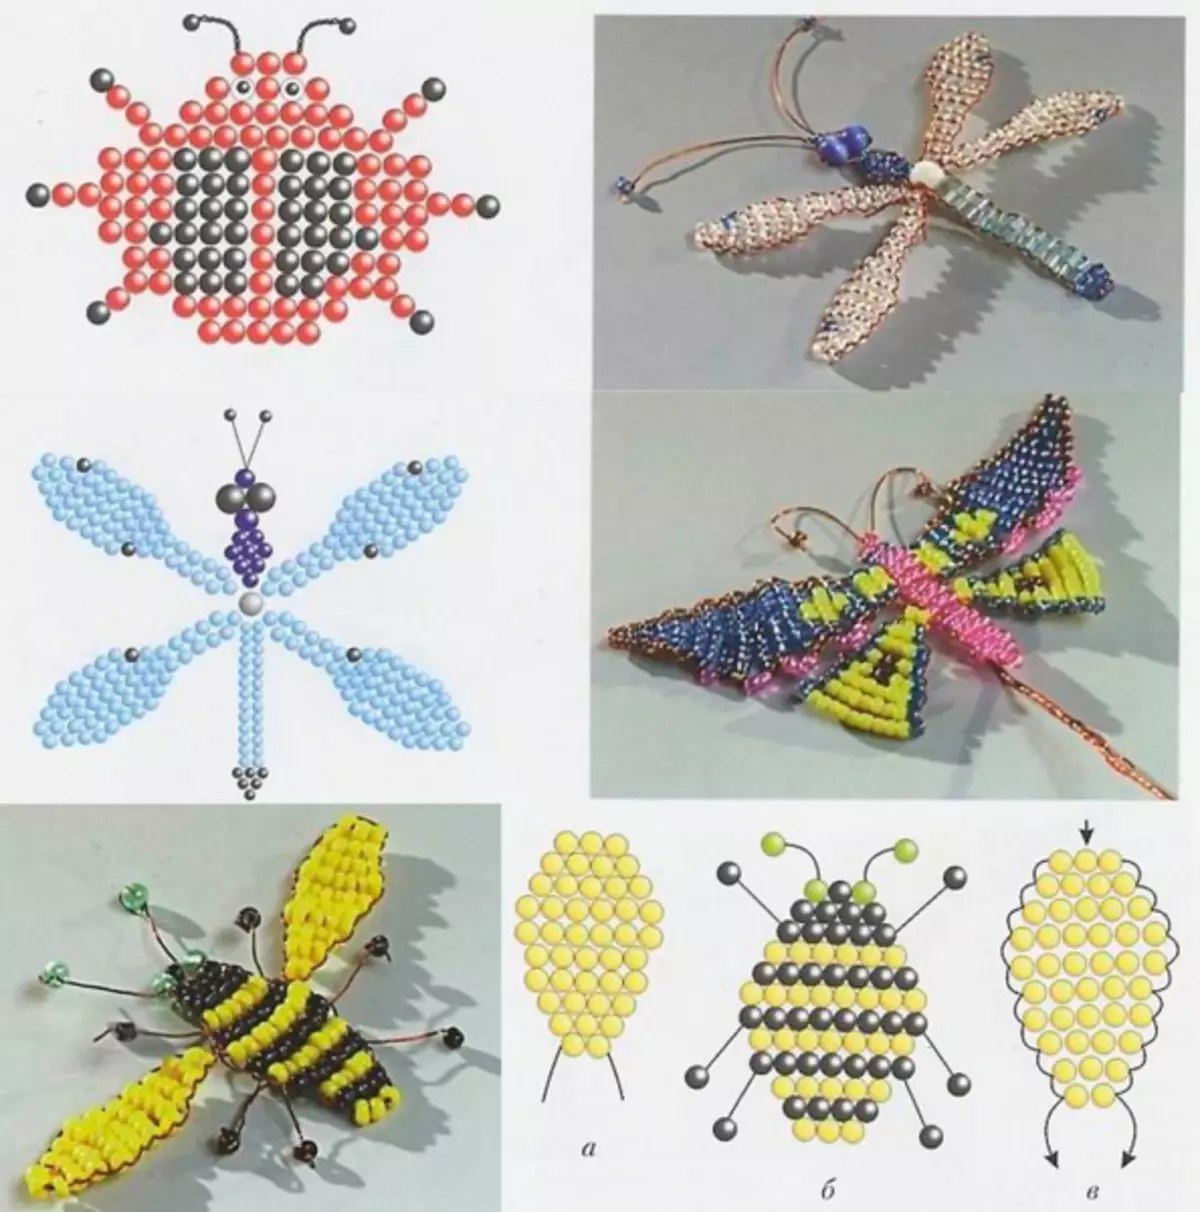 Insectes de comptes en forma de fermalls: classe magistral amb esquemes i fotos